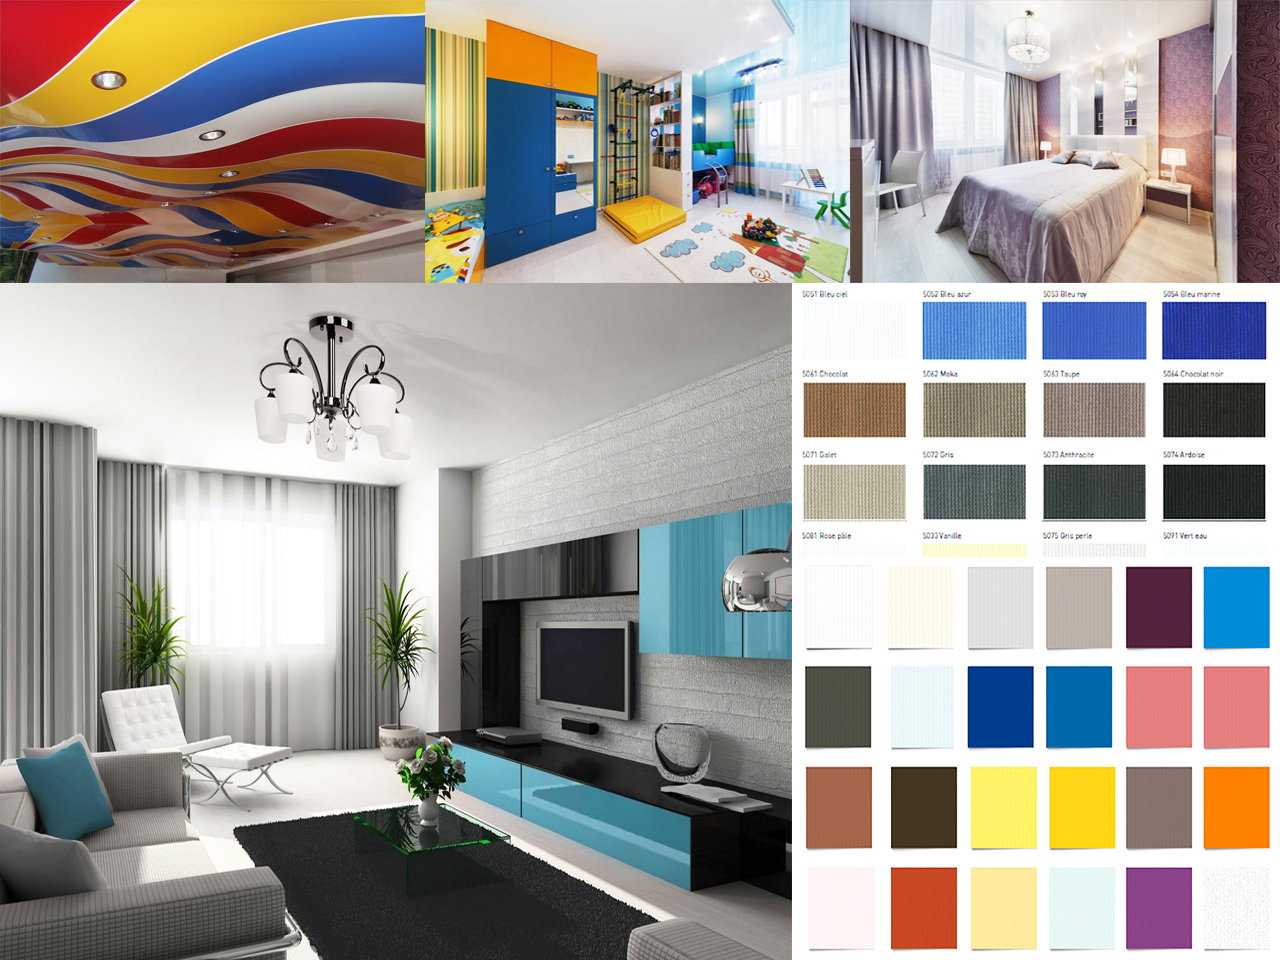 Как правильно выбрать натяжной потолок характеристика каждого вида преимущества А также критерии выбора советы от дизайнеров по поводу цветовых решений